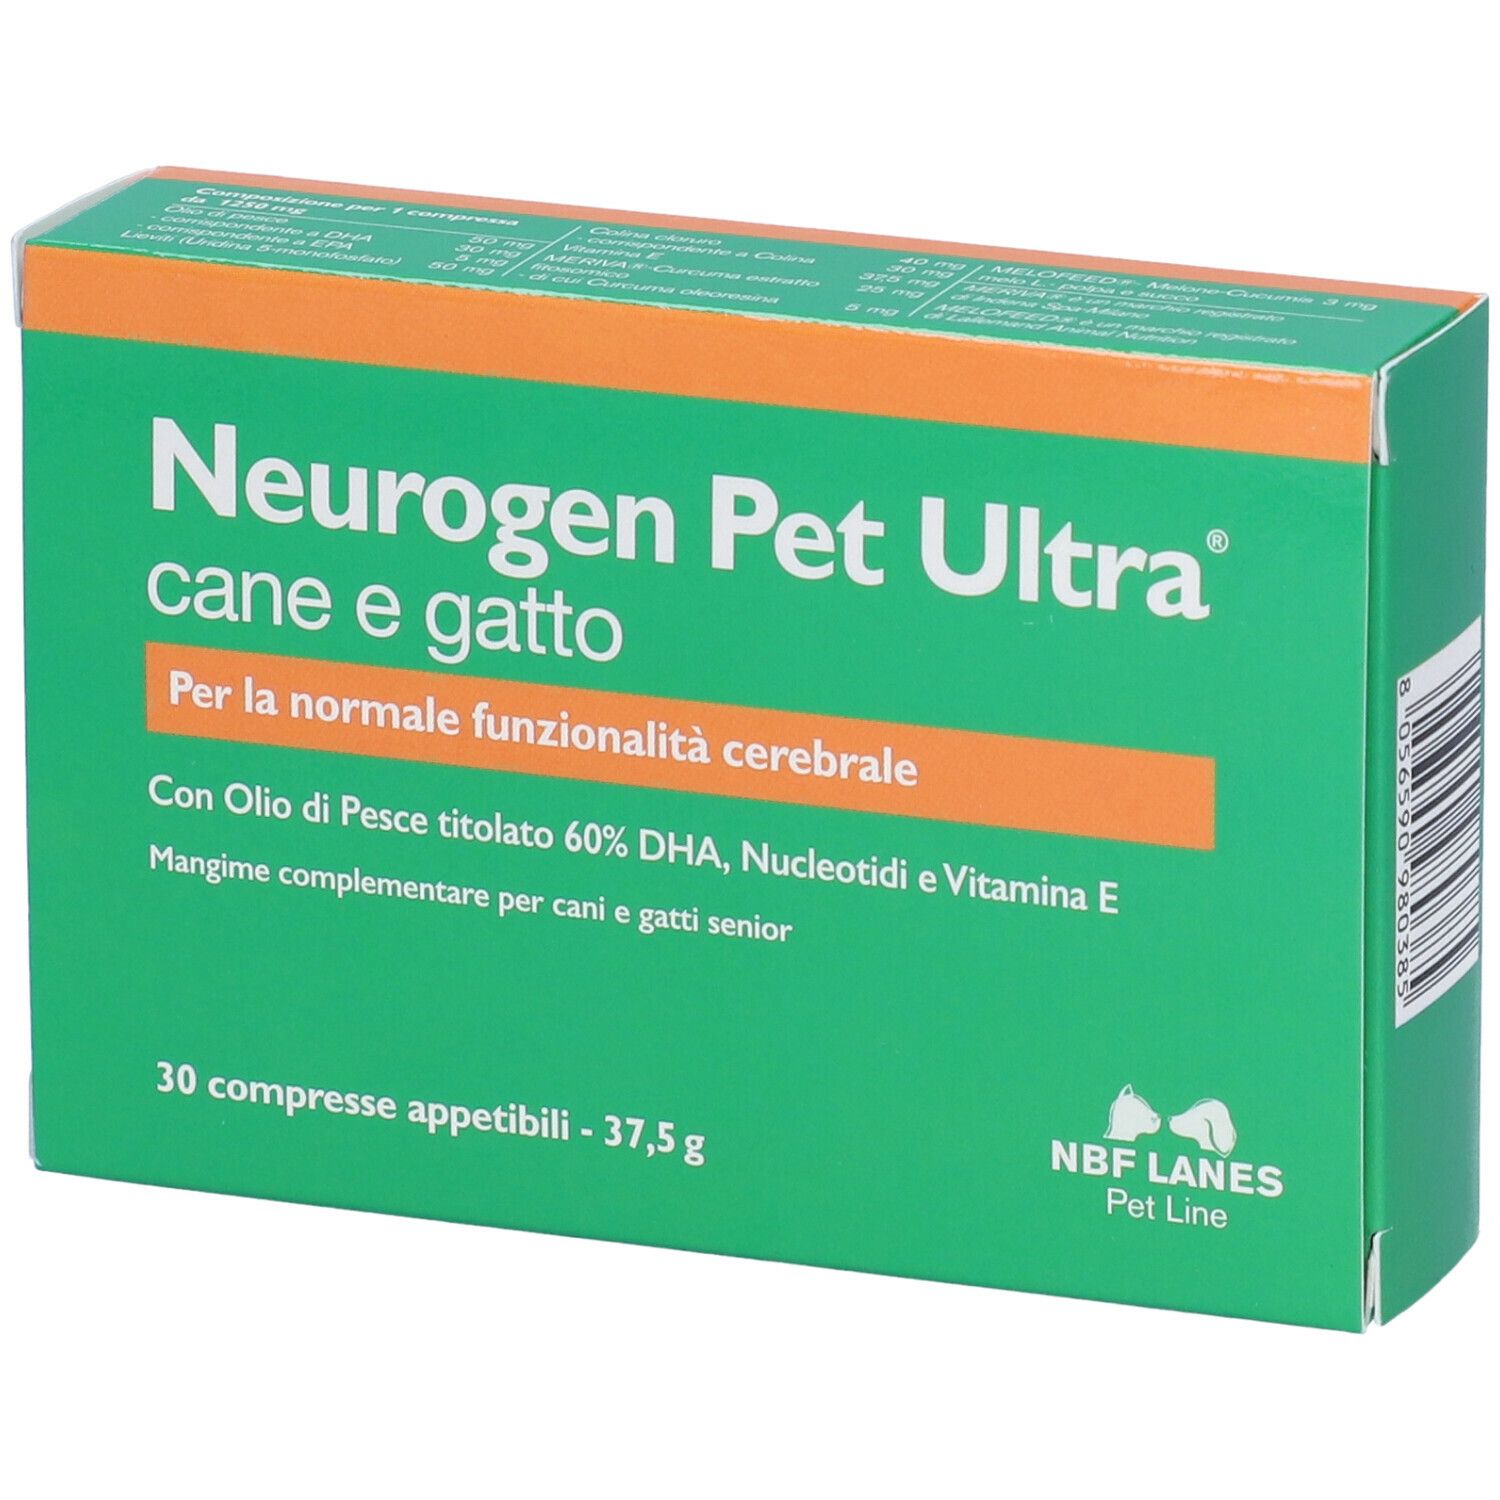 Image of NBF LANES Neurogen Pet Ultra